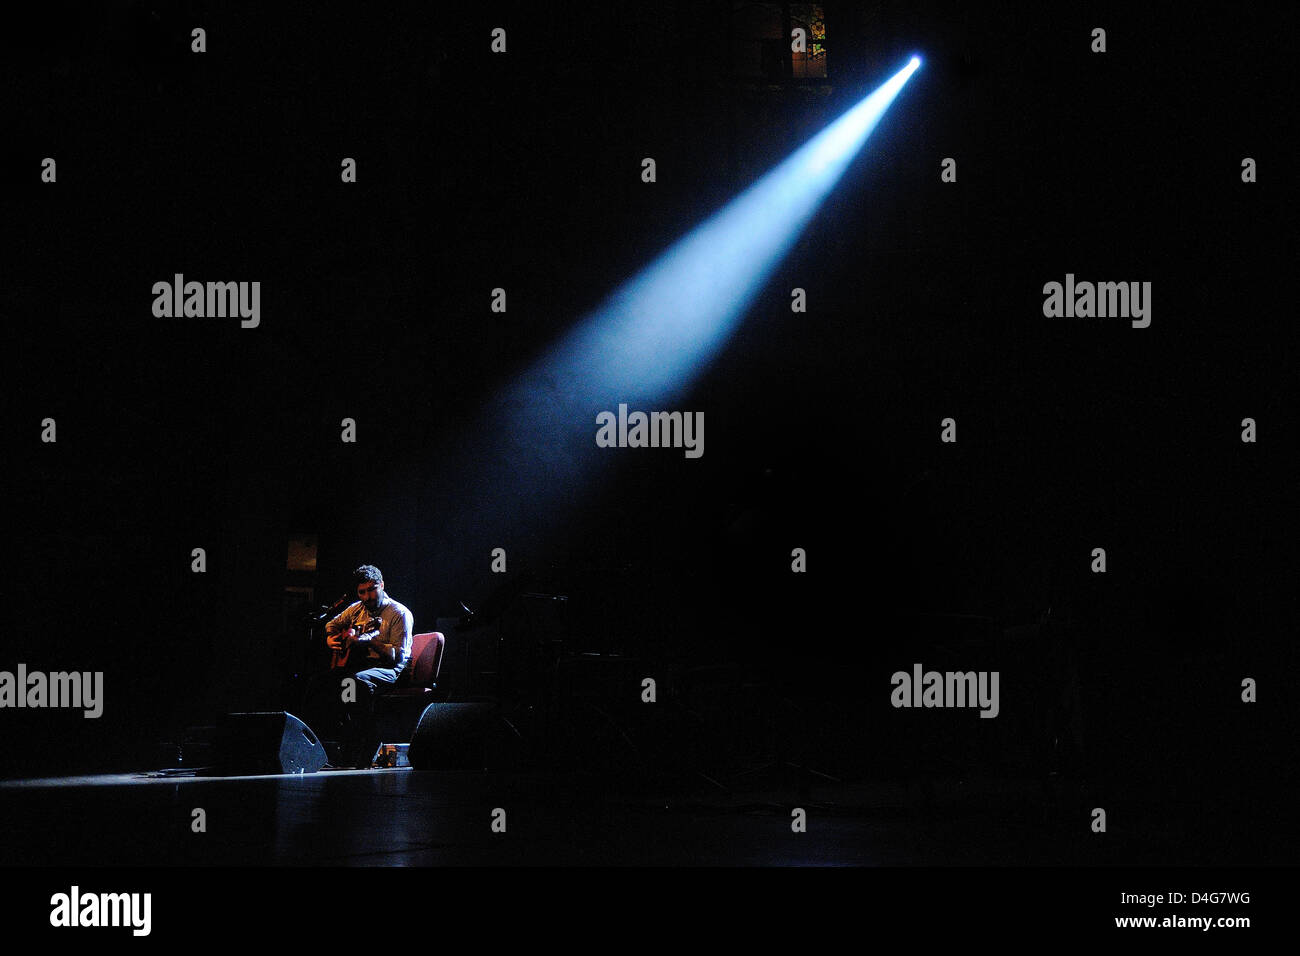 Barcelone, Espagne - avril 3 : Jose Gonzalez effectue au Palau de la Musica le 3 avril 2011 à Barcelone, Espagne. Banque D'Images